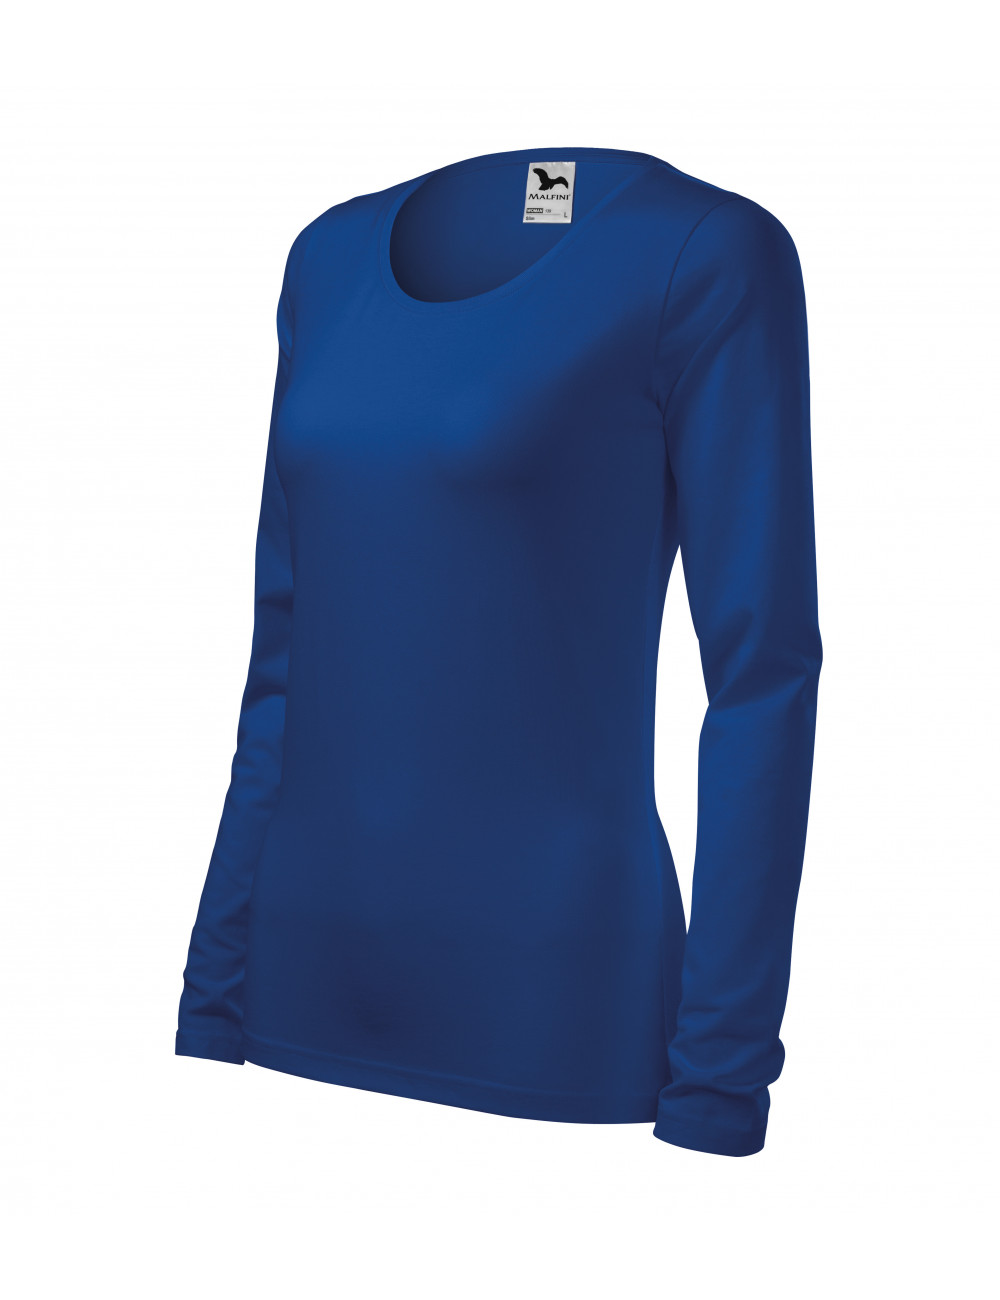 Women`s slim t-shirt 139 cornflower blue Adler Malfini